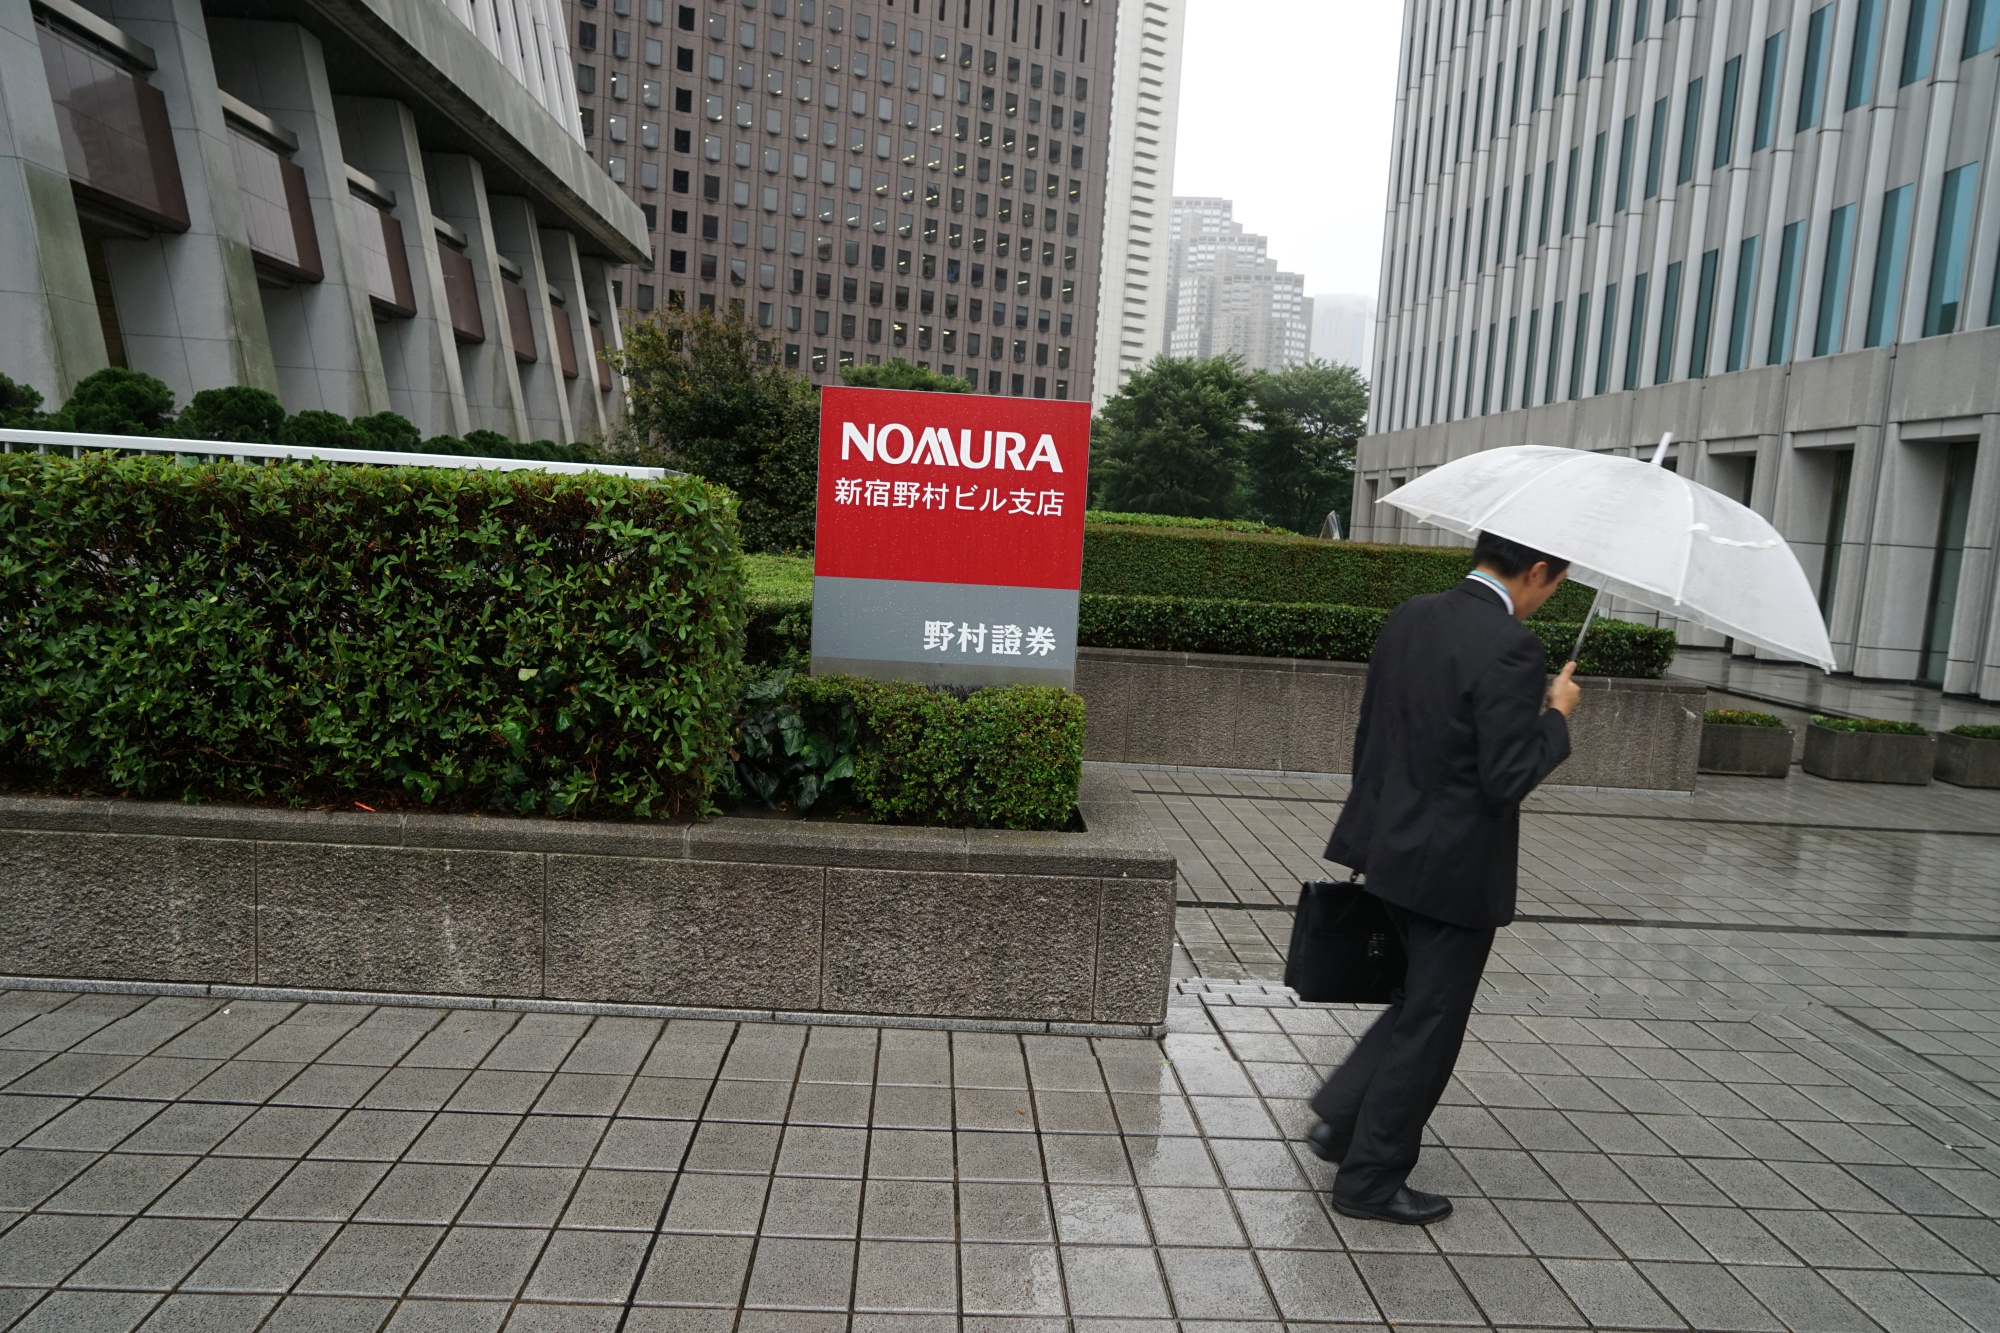 A Nomura branch&nbsp;in Tokyo, Japan.